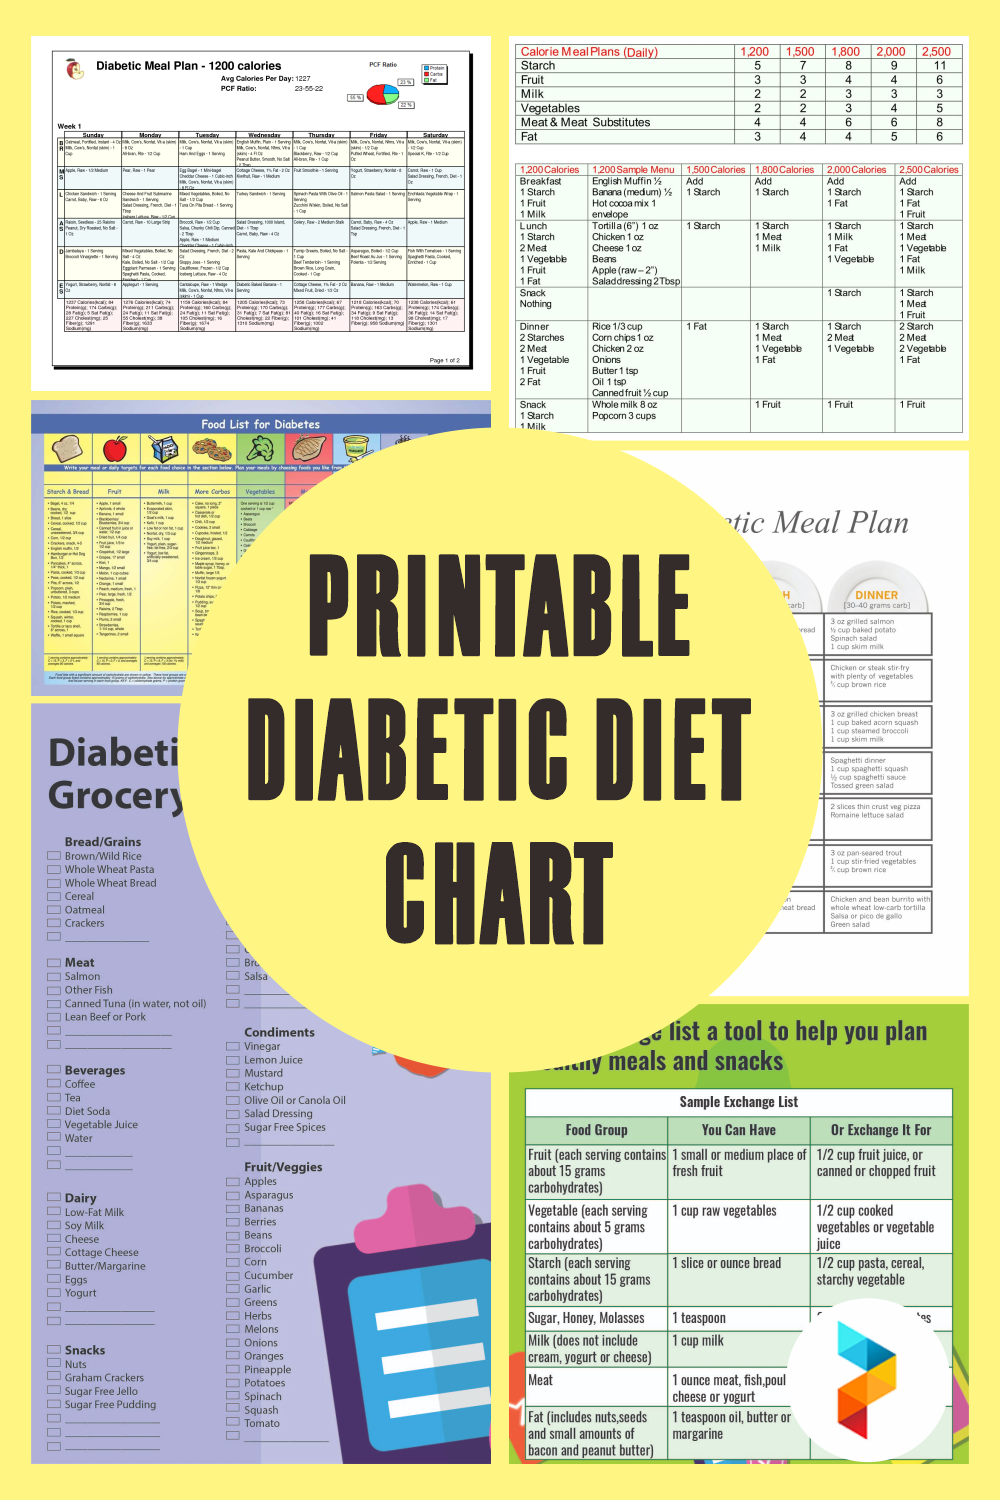 Diabetes Diet Plan 800 Calories - The Guide Ways